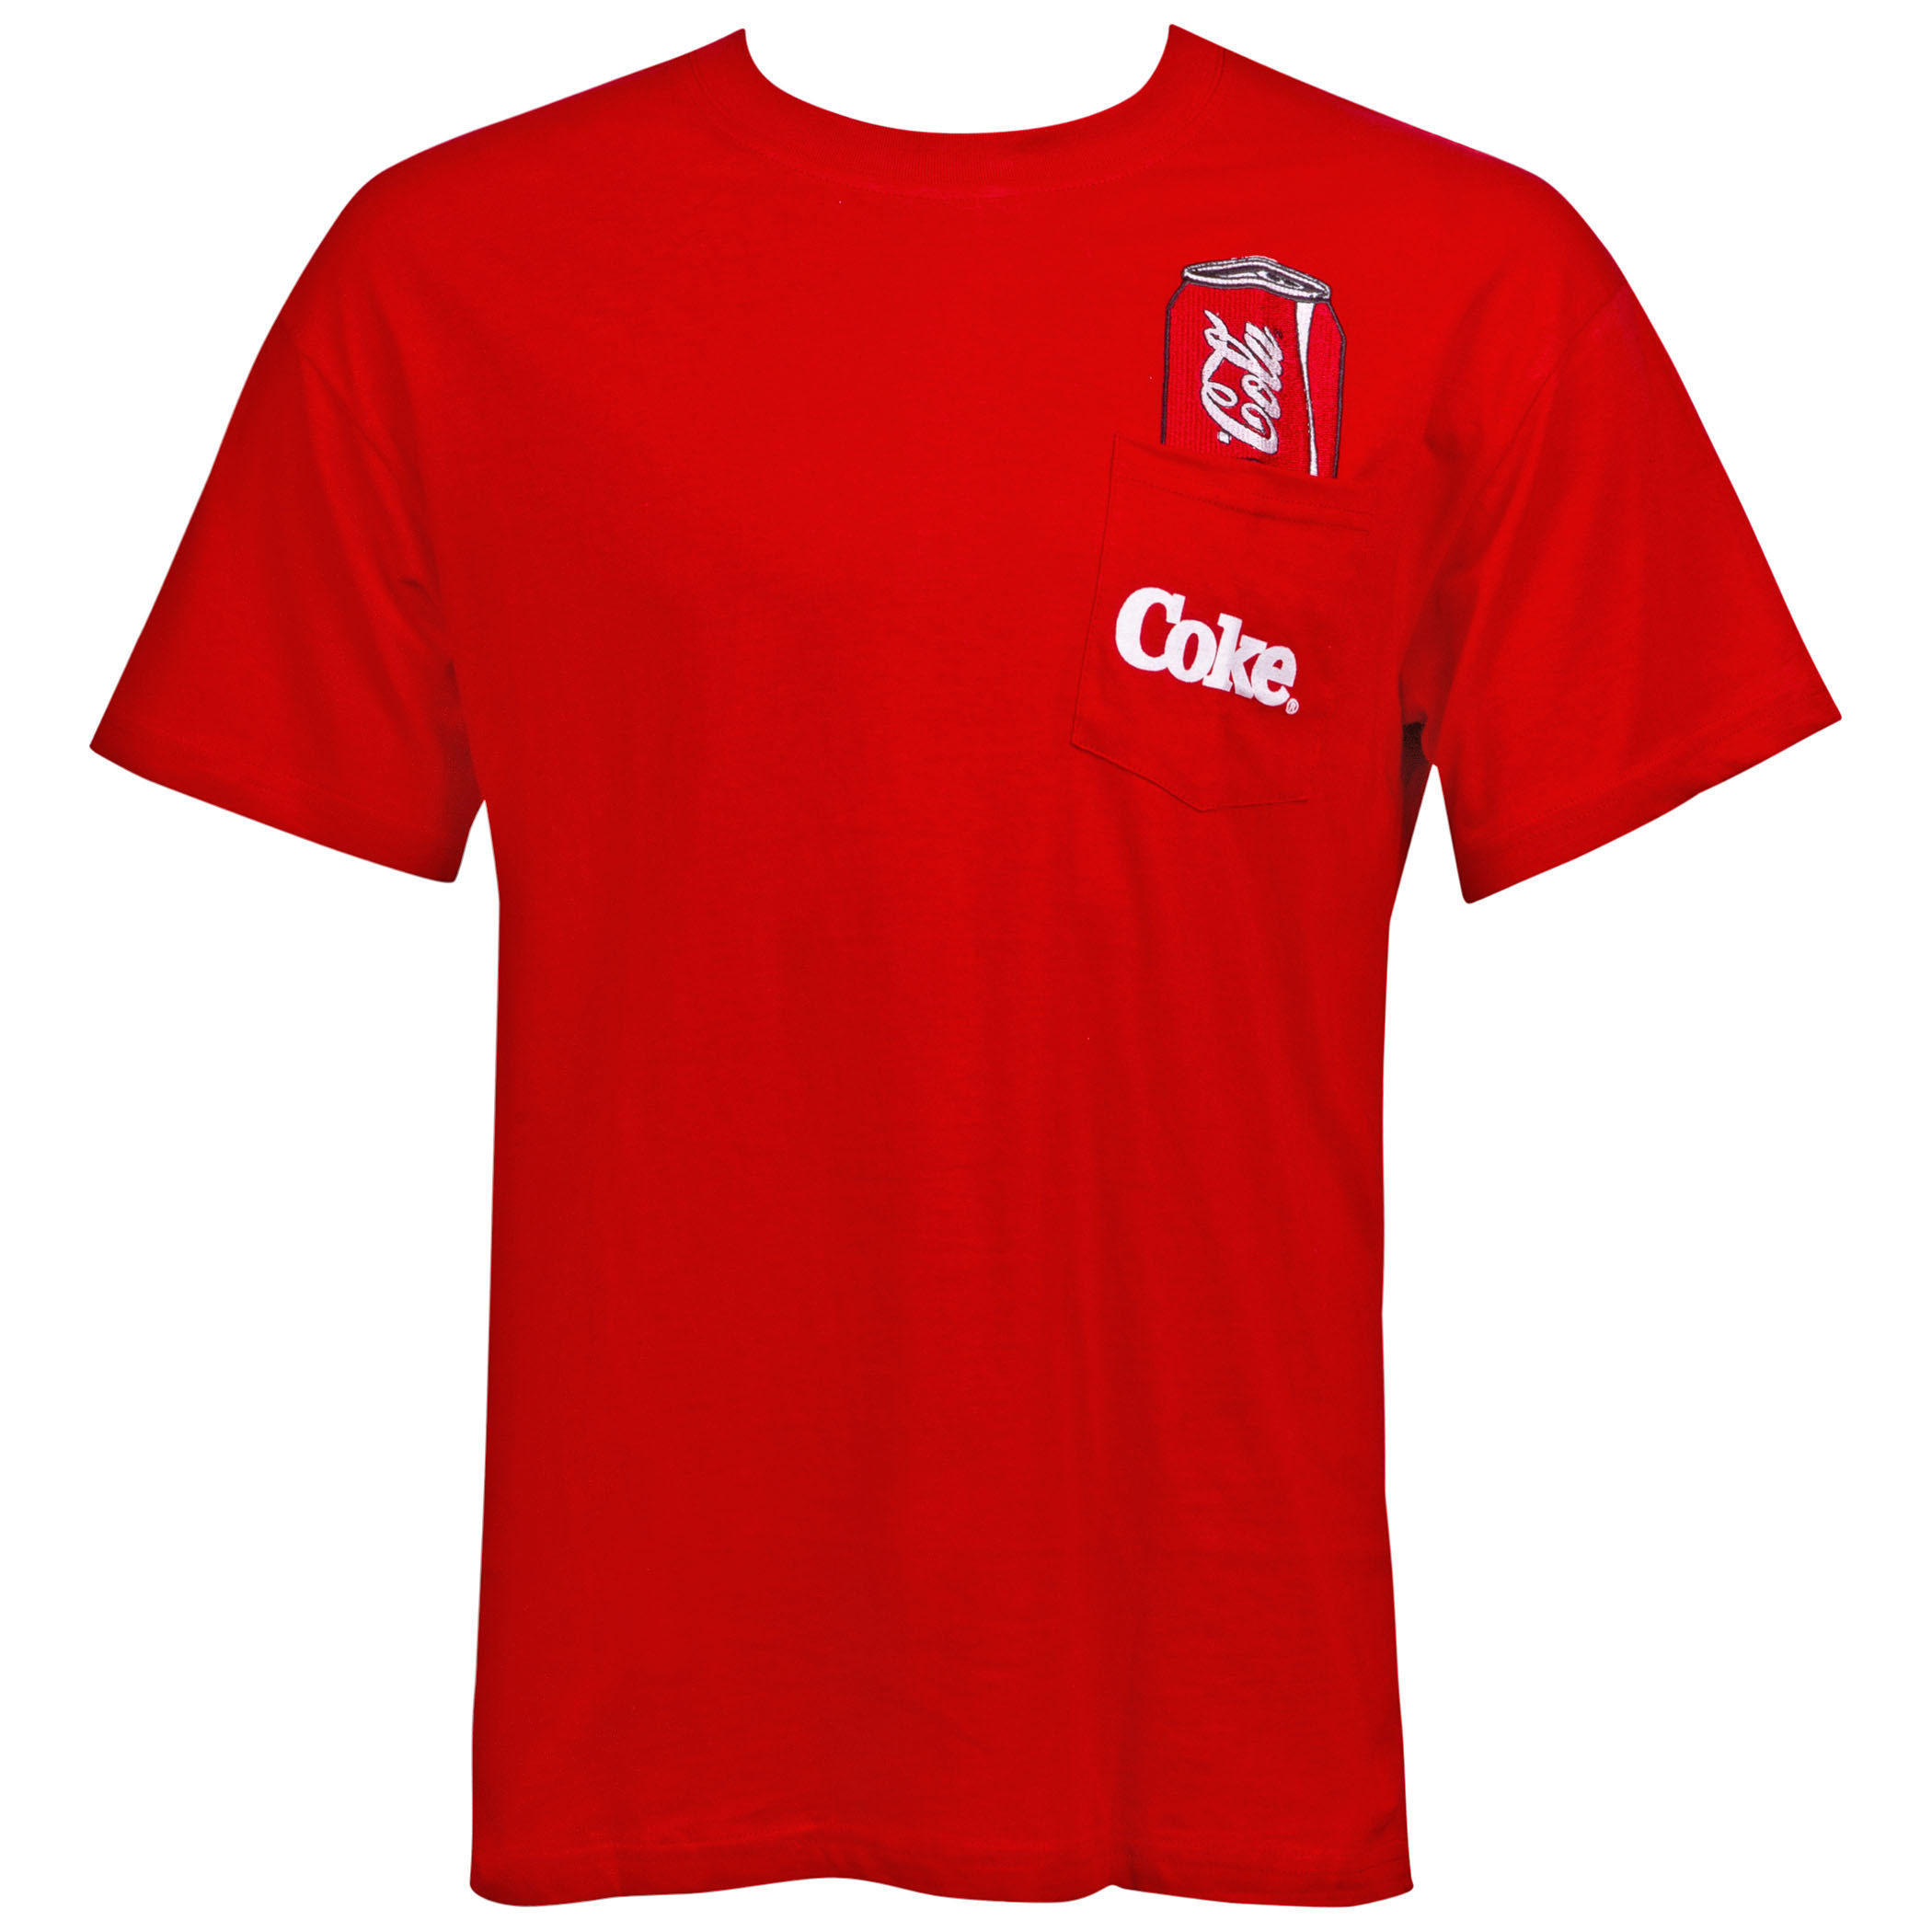 Coca-Cola Men's Red Pocket T-Shirt